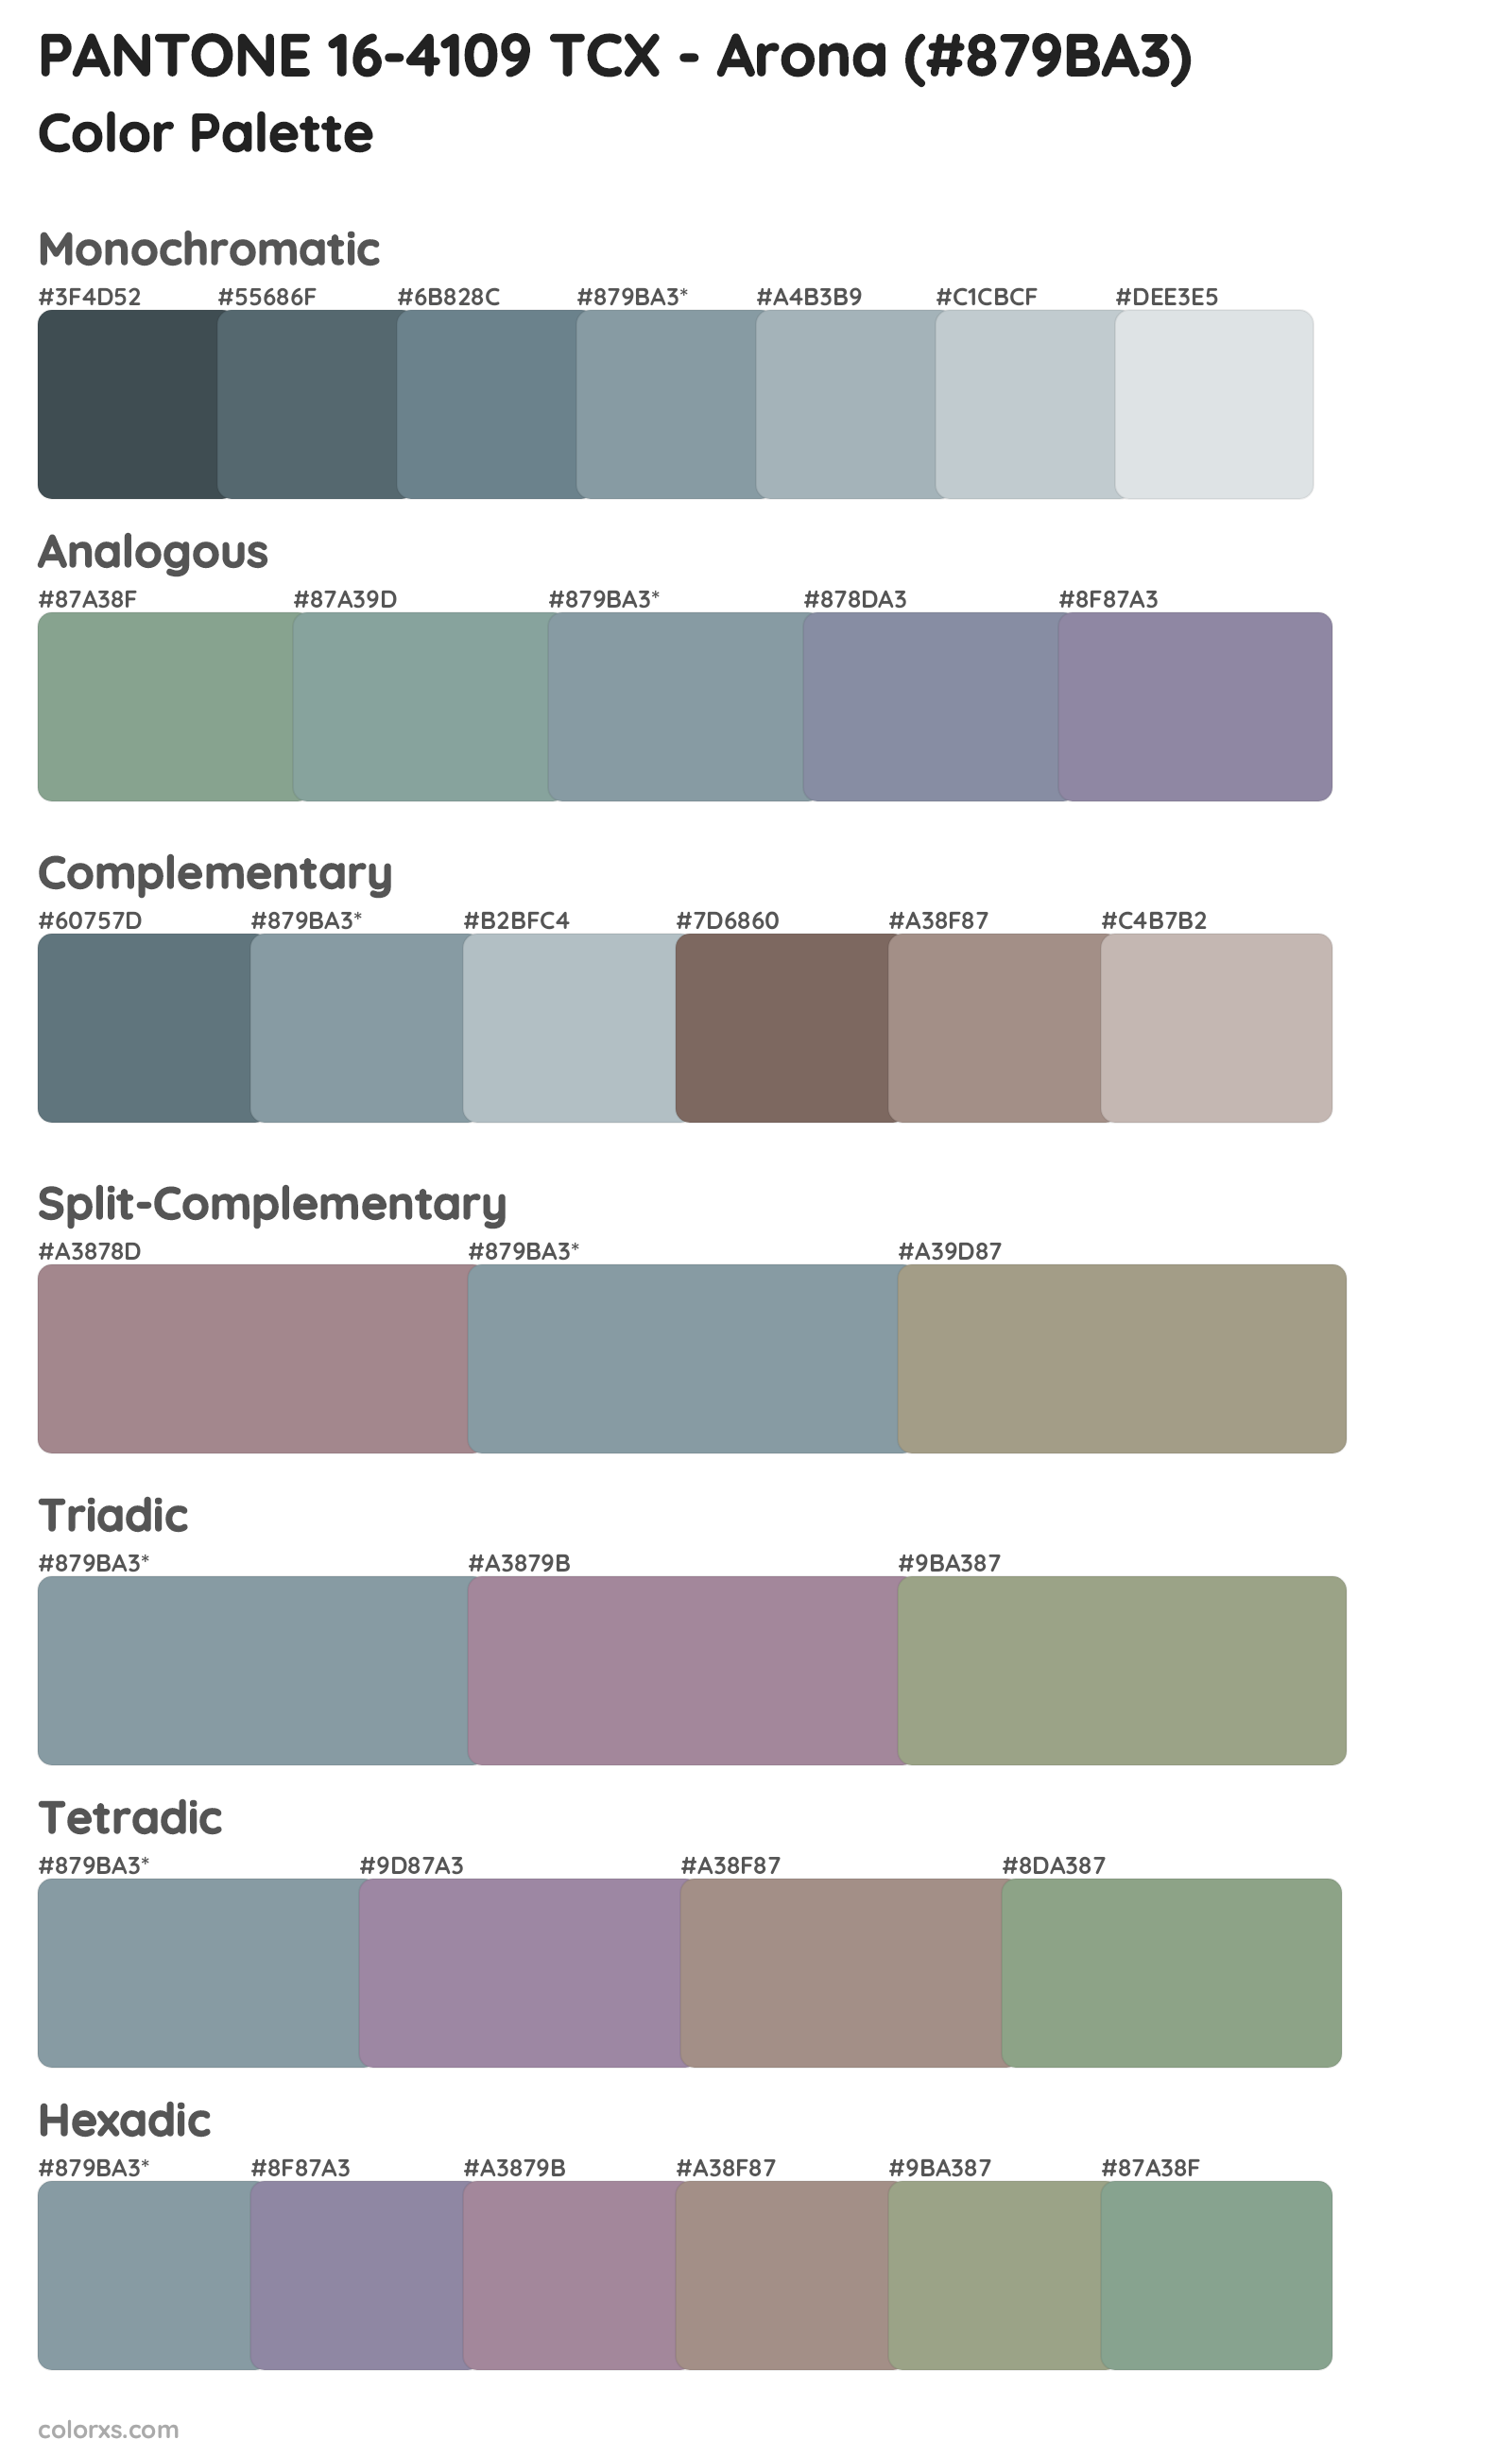 PANTONE 16-4109 TCX - Arona Color Scheme Palettes